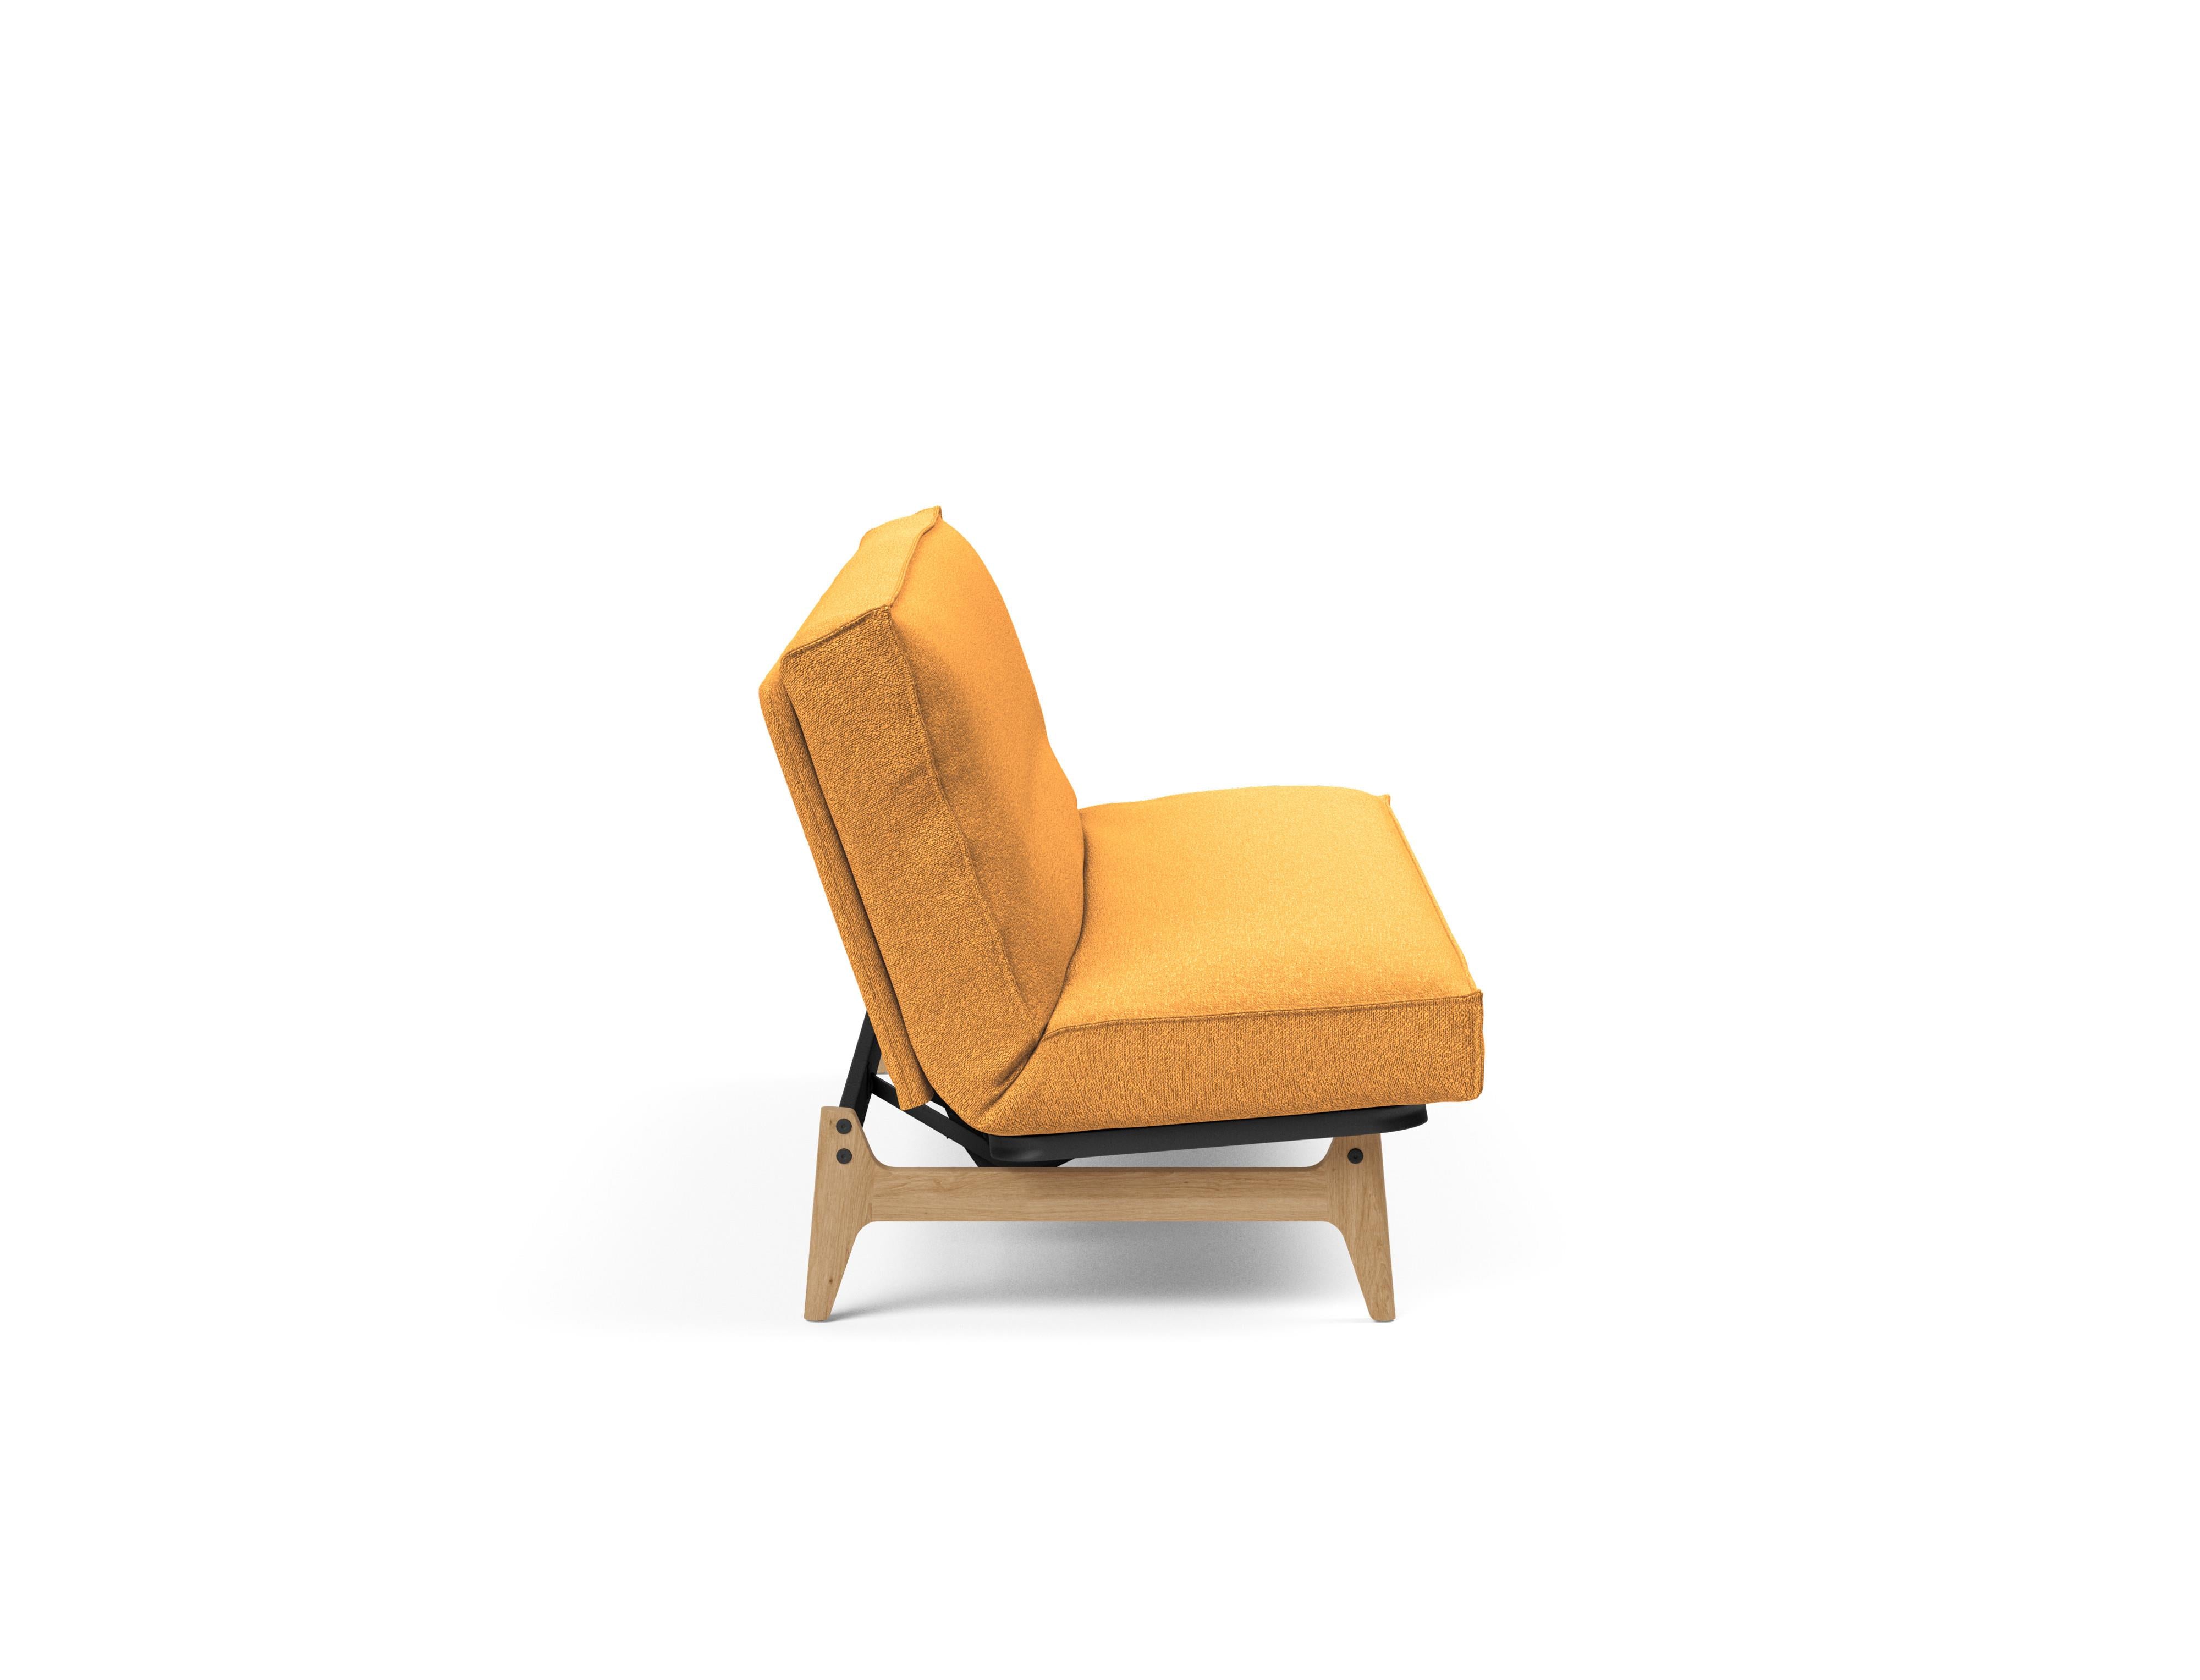 Aslak 120 Bettsofa Sharp Plus Cover in Ocker 536 präsentiert im Onlineshop von KAQTU Design AG. Bettsofa ist von Innovation Living